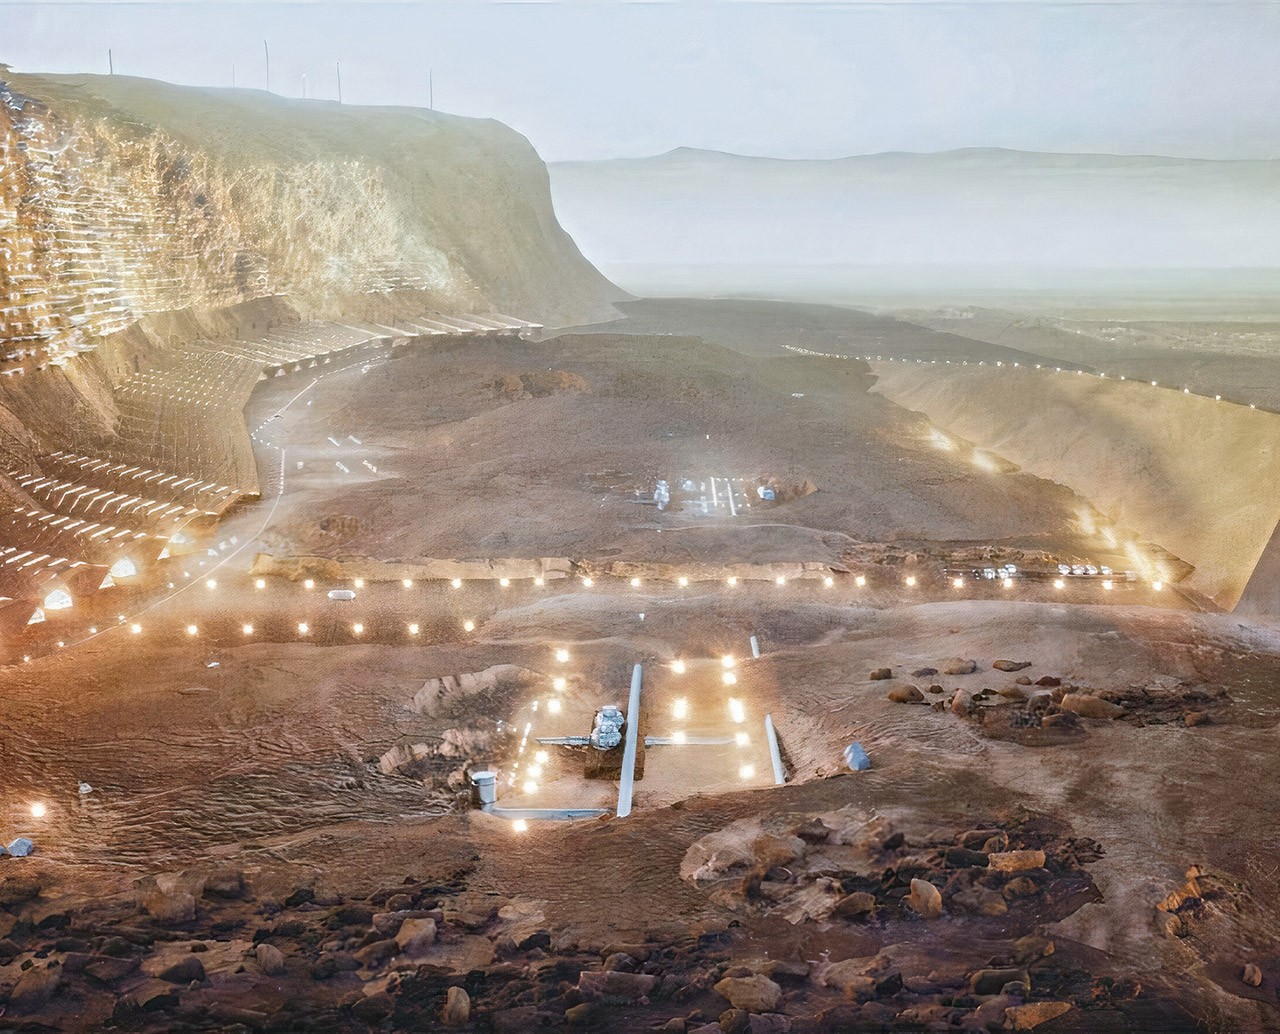 Nüwa - grad koji je planiran na Marsu